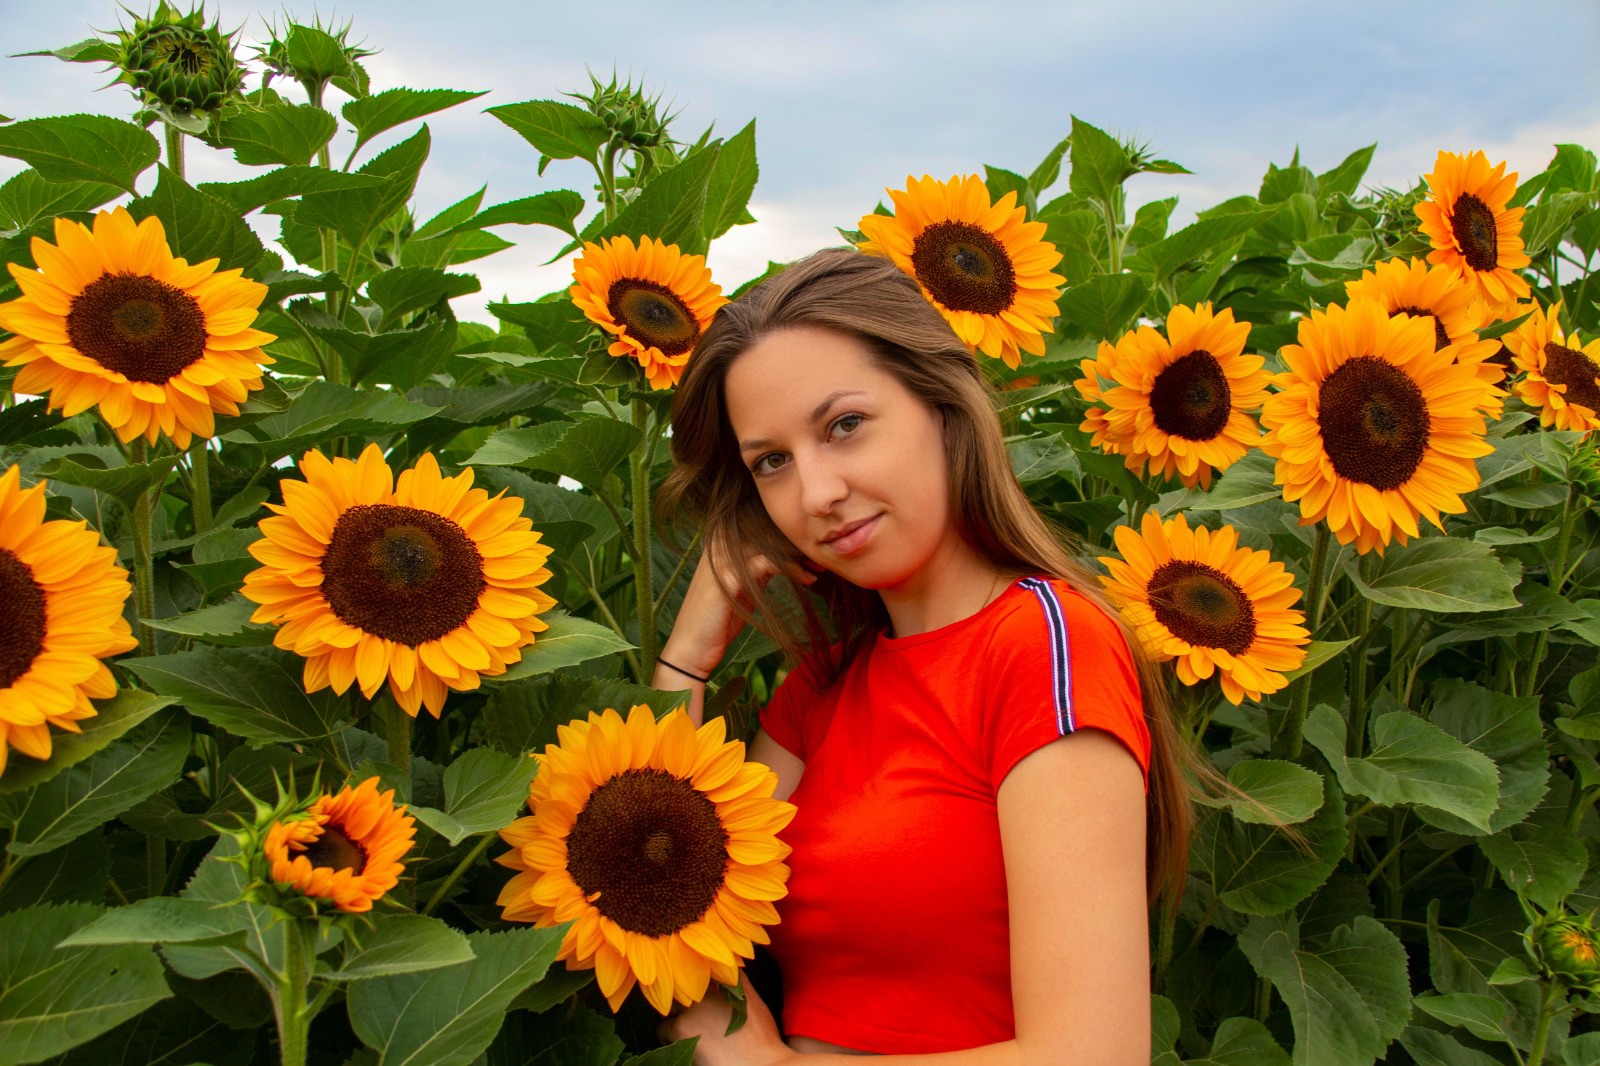 Junge Frau in orangefarbenem Top steht lächelnd in einem Sonnenblumenfeld. Die Gründerin Laura von dem Kleinunternehmen LaNuFaktur aus Deutschland.